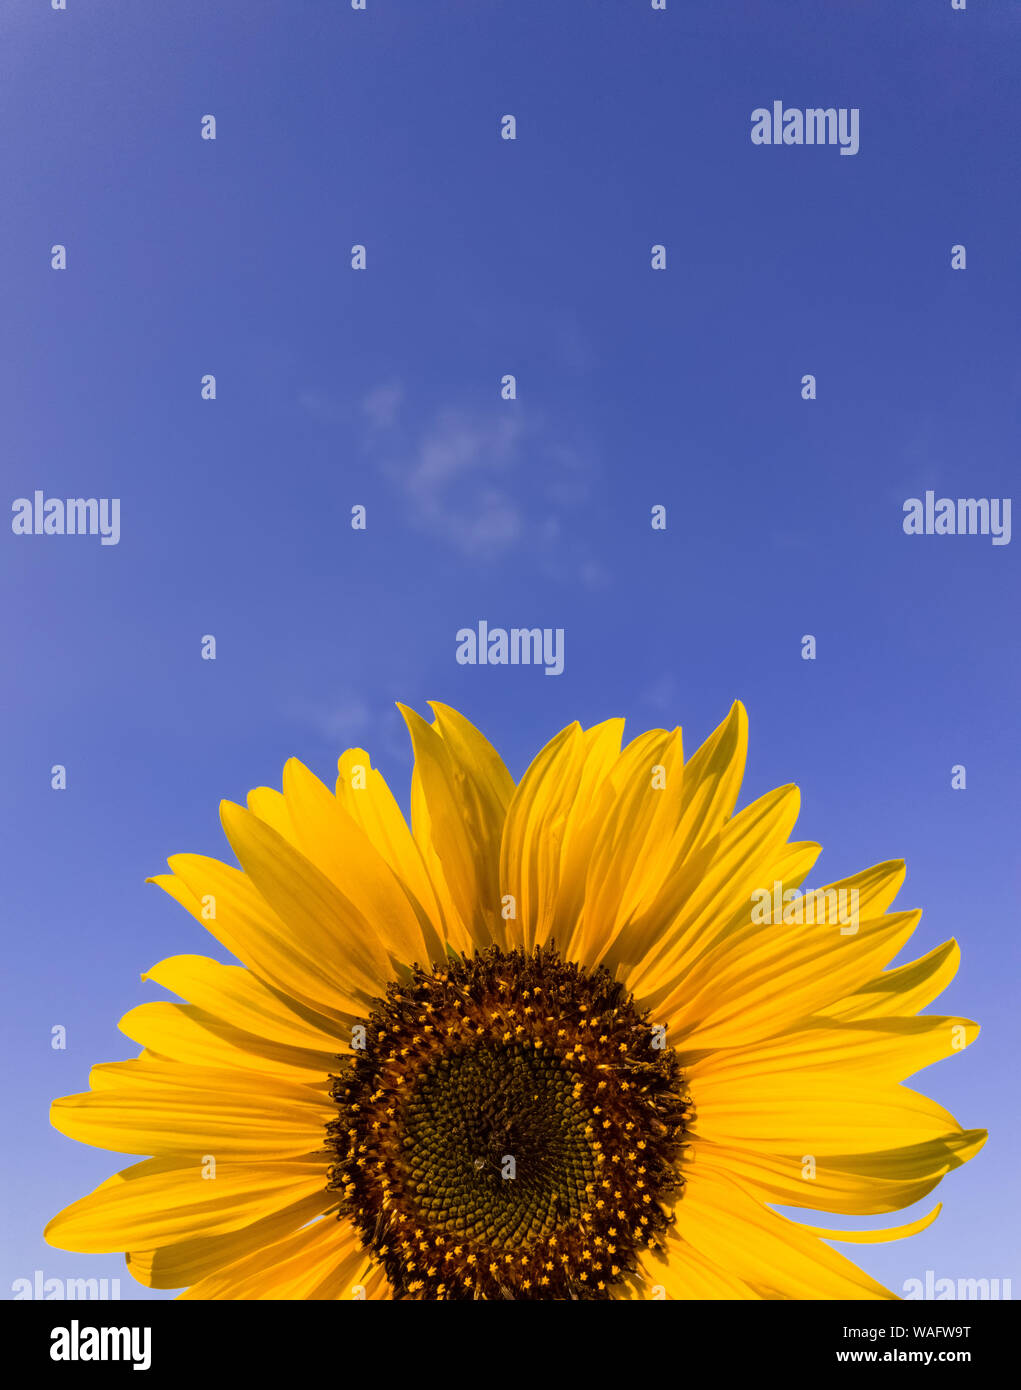 In der Nähe von Sunflower Pflanze, die im Bereich über dem klaren, blauen Himmel Hintergrund an einem sonnigen Herbsttag. Organische und natürliche Gelbe Blütenblätter Textur Stockfoto